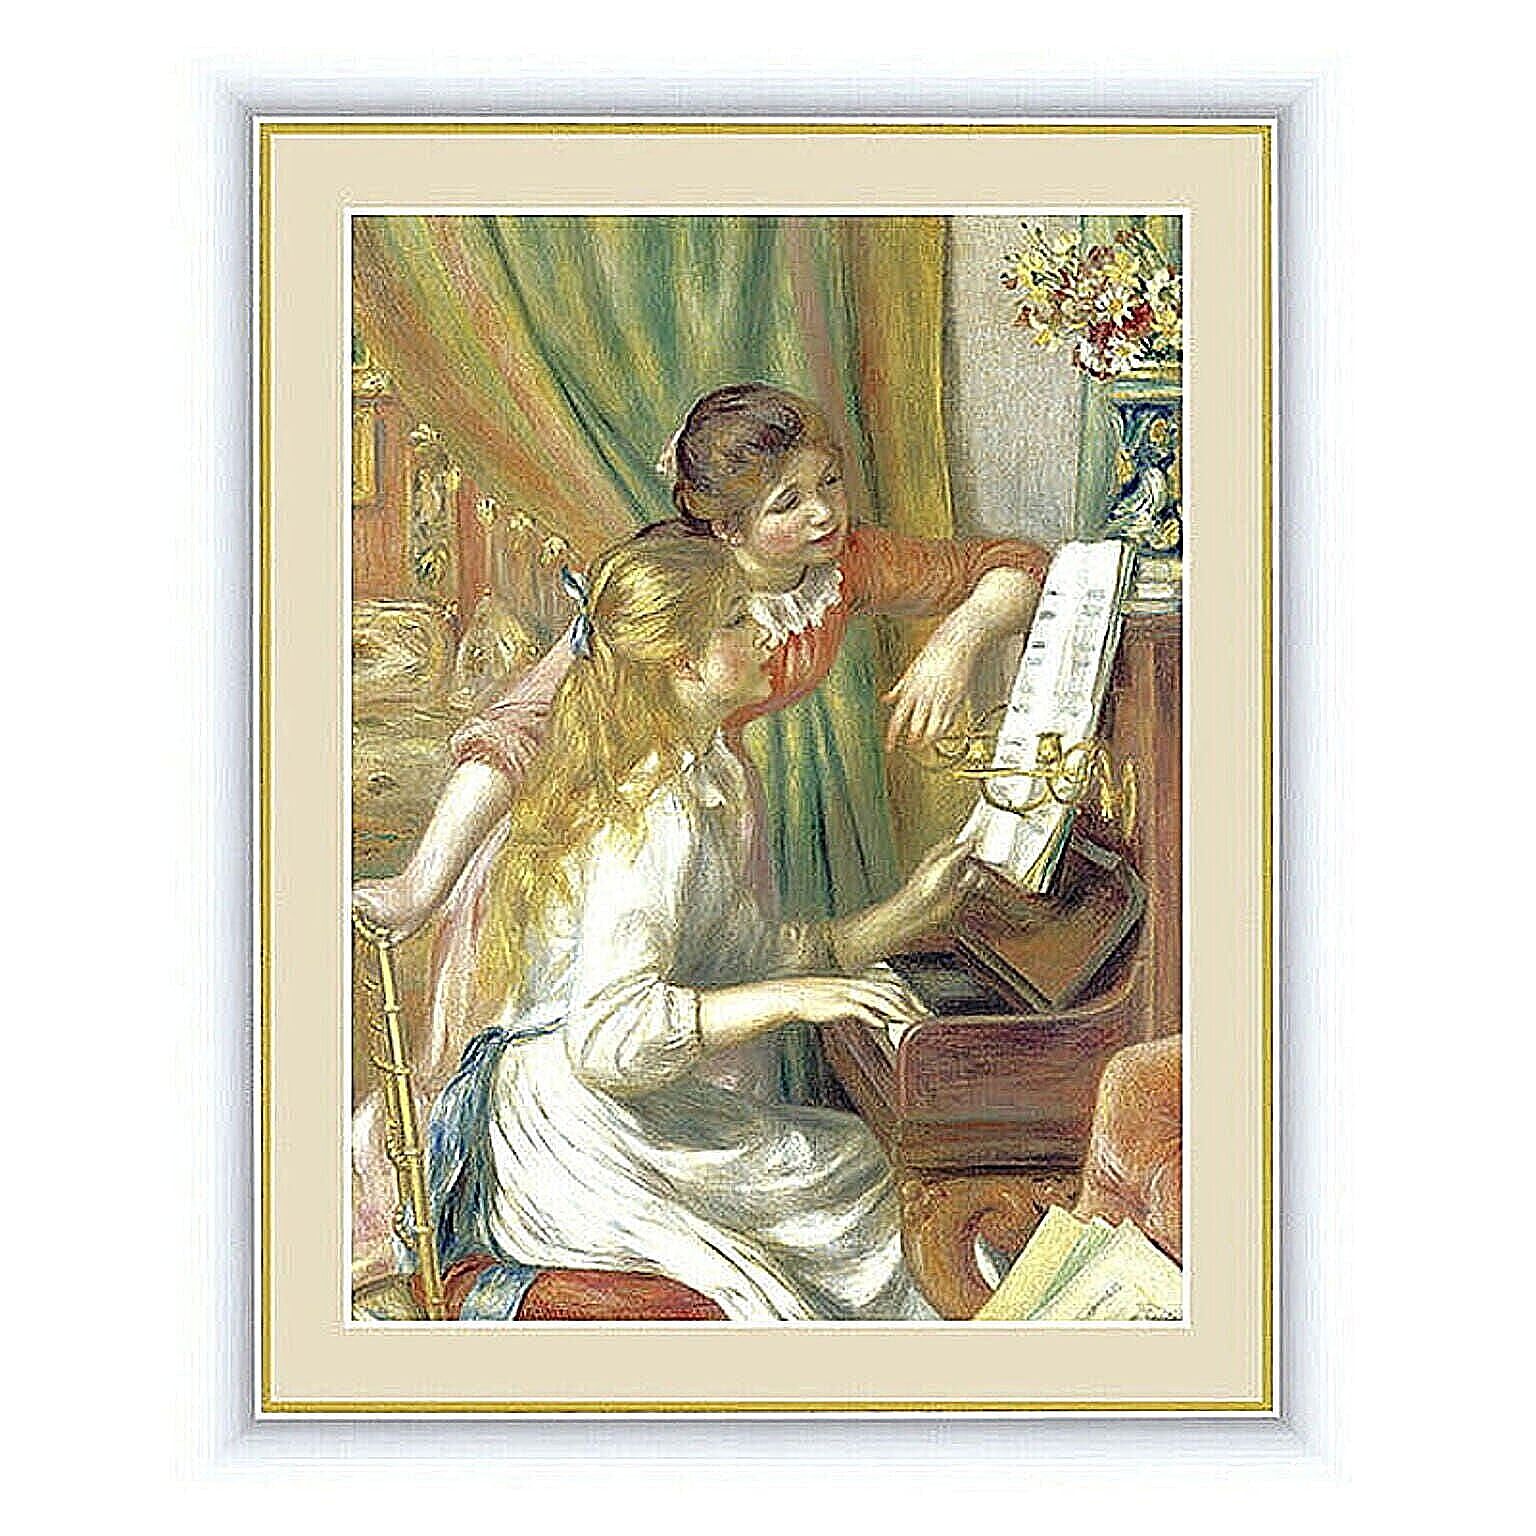 アート 額絵 ピアノに寄る少女たち ルノワール 本紙サイズ F6(約40x30cm) 額サイズ 52x42cm 三幸